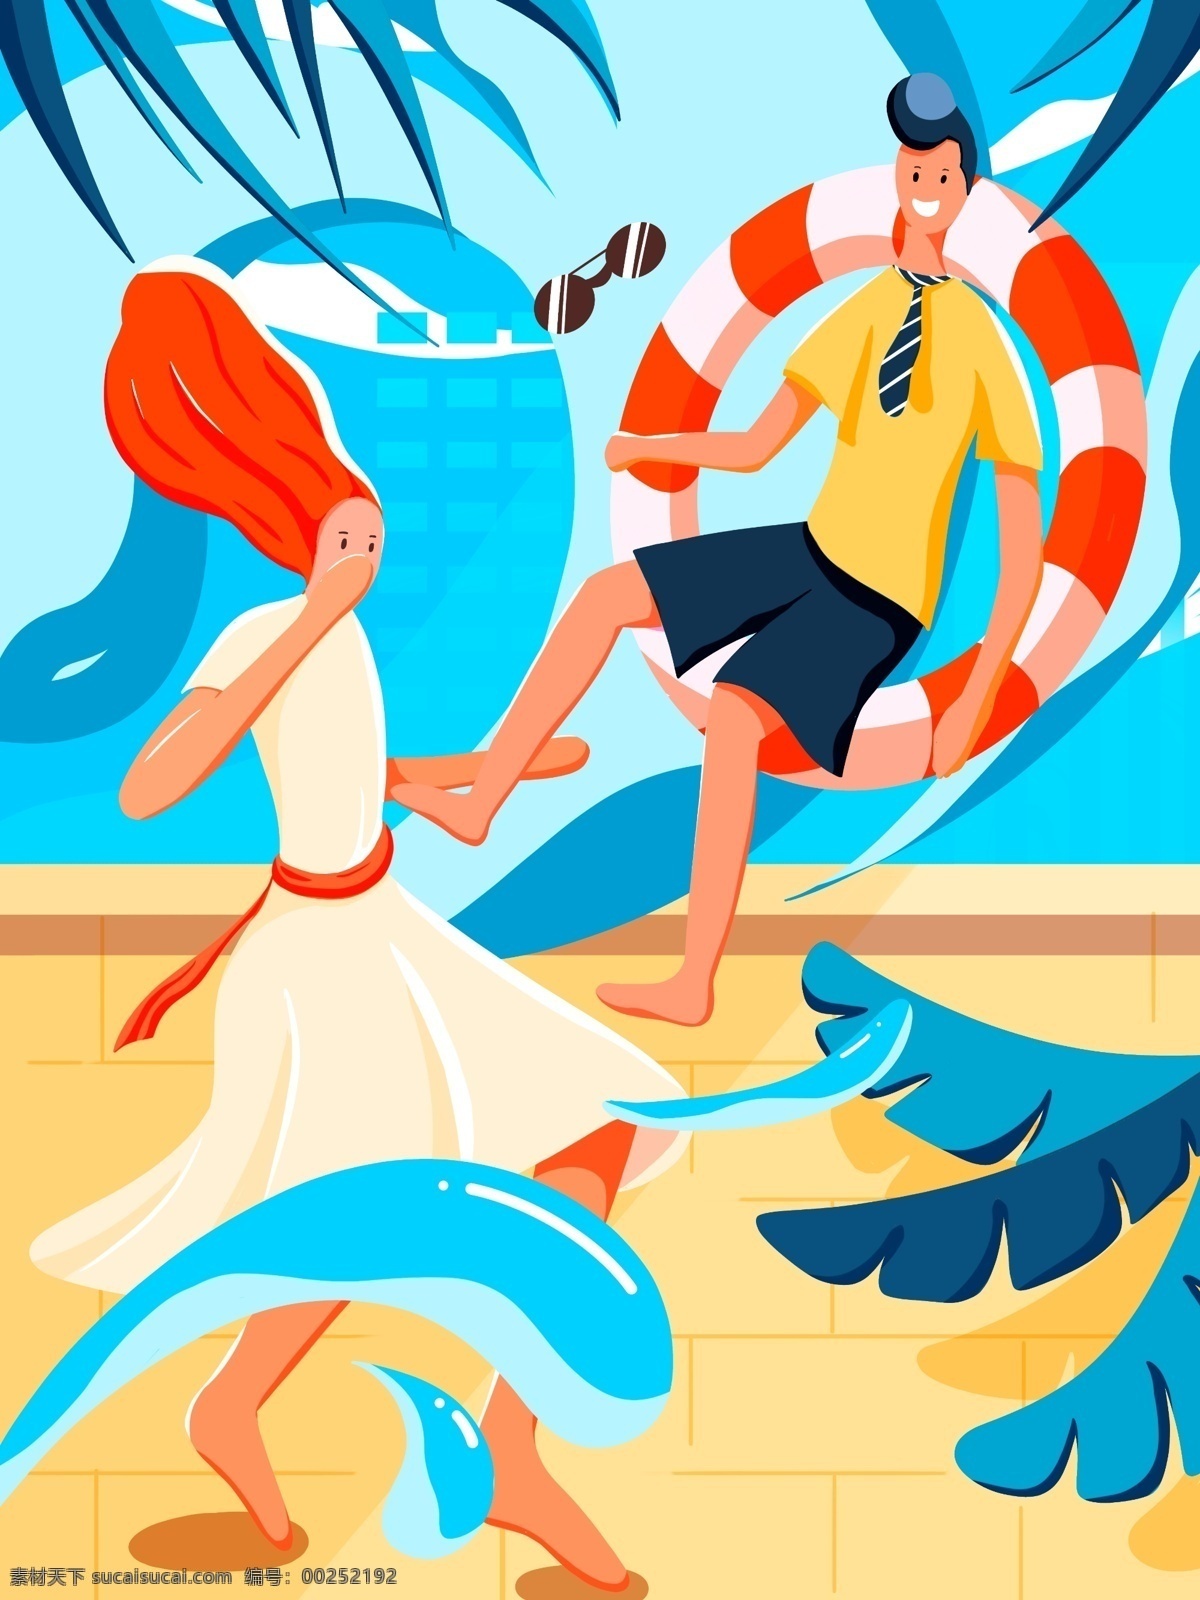 二十四节气 立夏 手绘 海报 插画 壁纸 初夏 夏天 节气 玩水 冲浪 游泳圈 女孩 男孩 盛夏